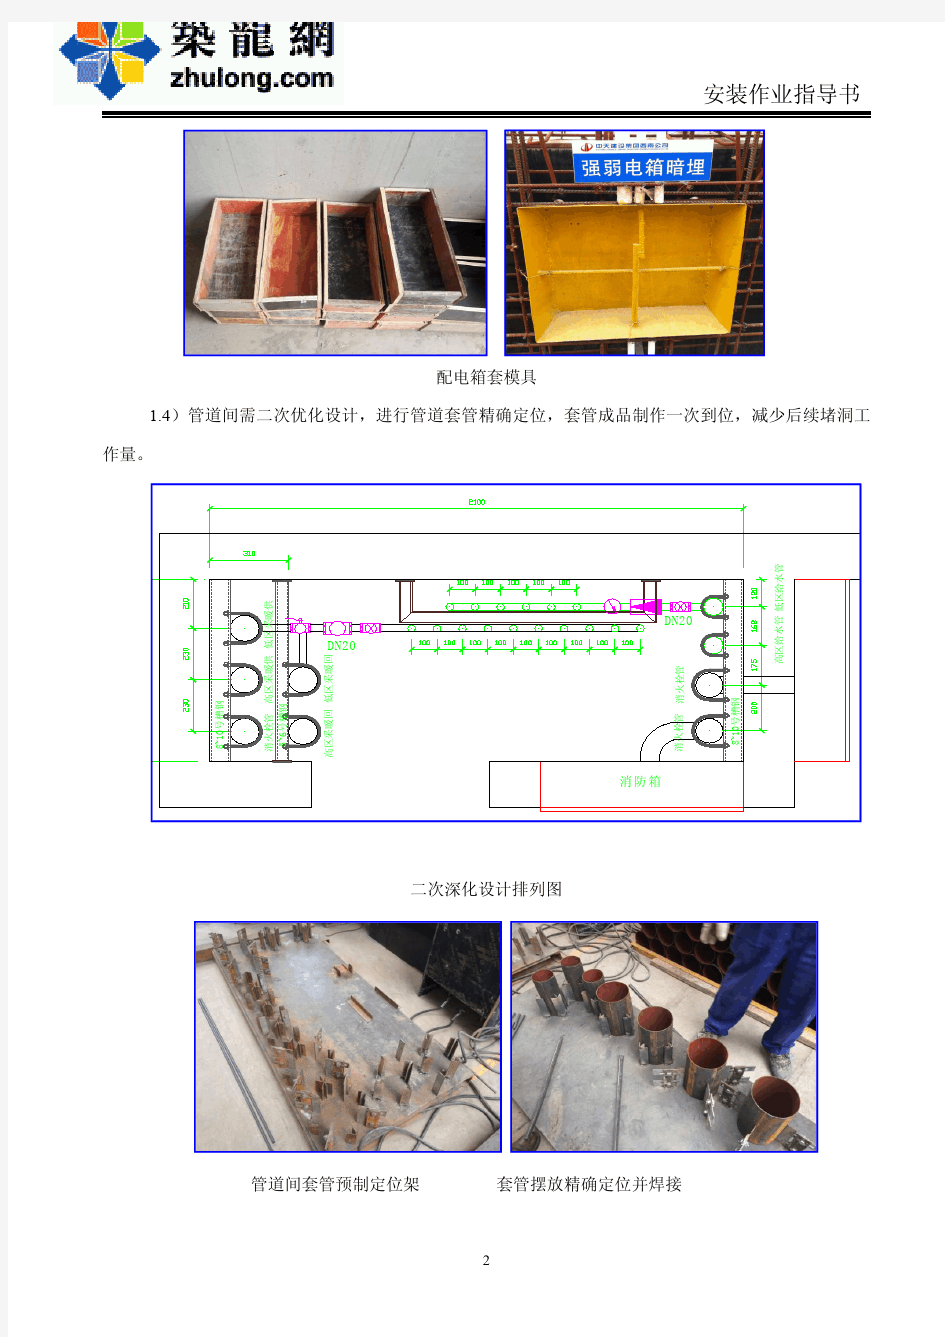 建筑工程水电安装施工作业标准指导书(附图)